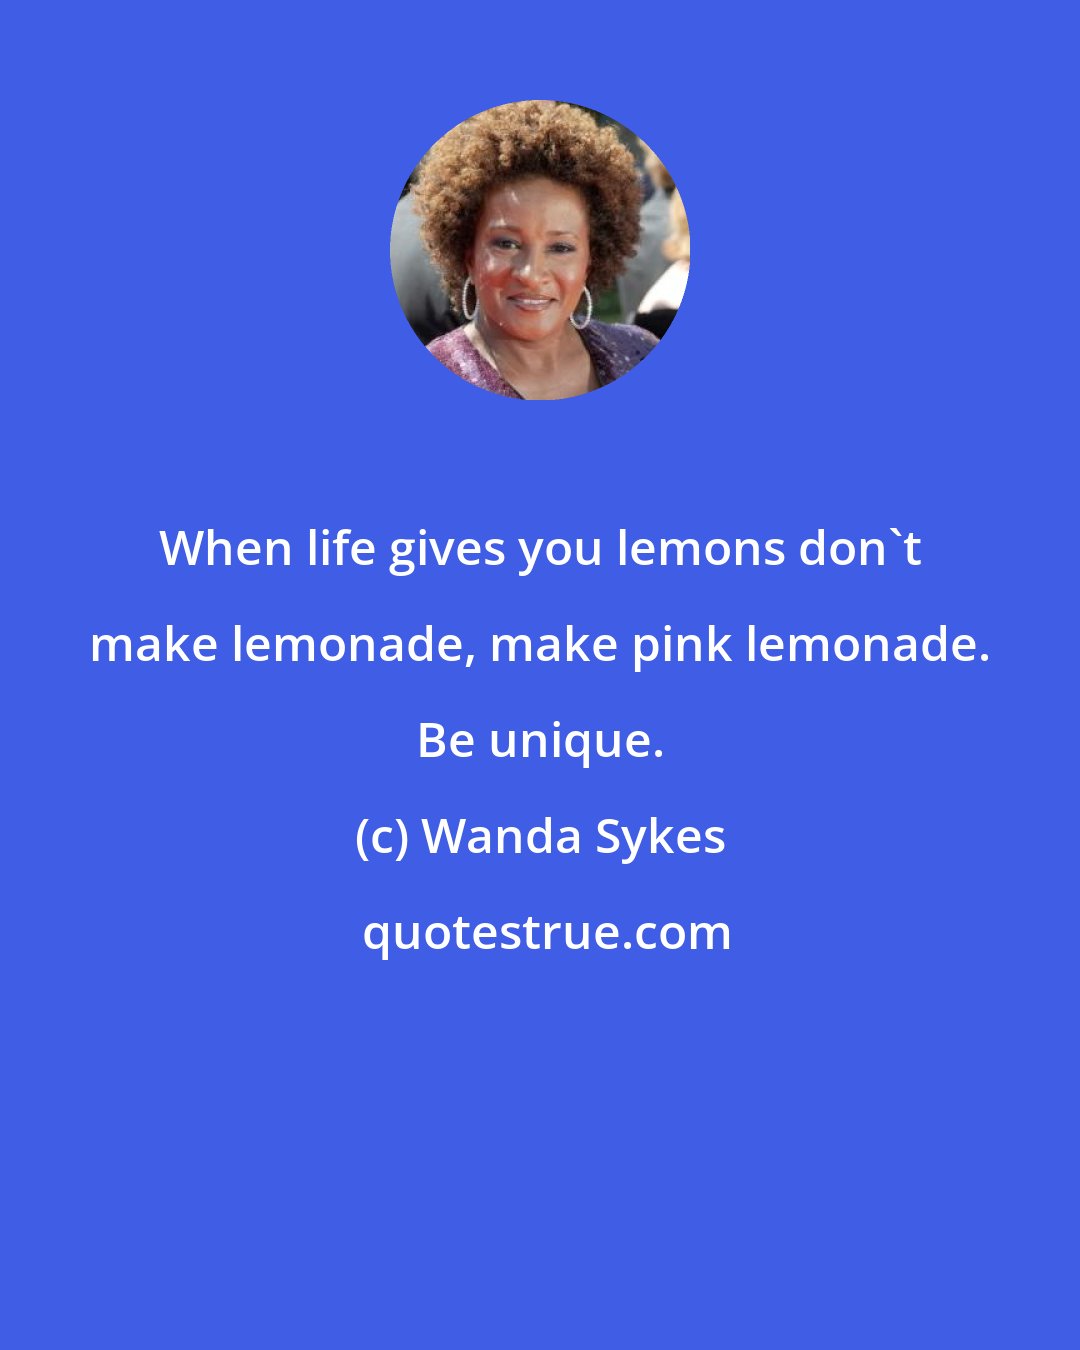 Wanda Sykes: When life gives you lemons don't make lemonade, make pink lemonade. Be unique.